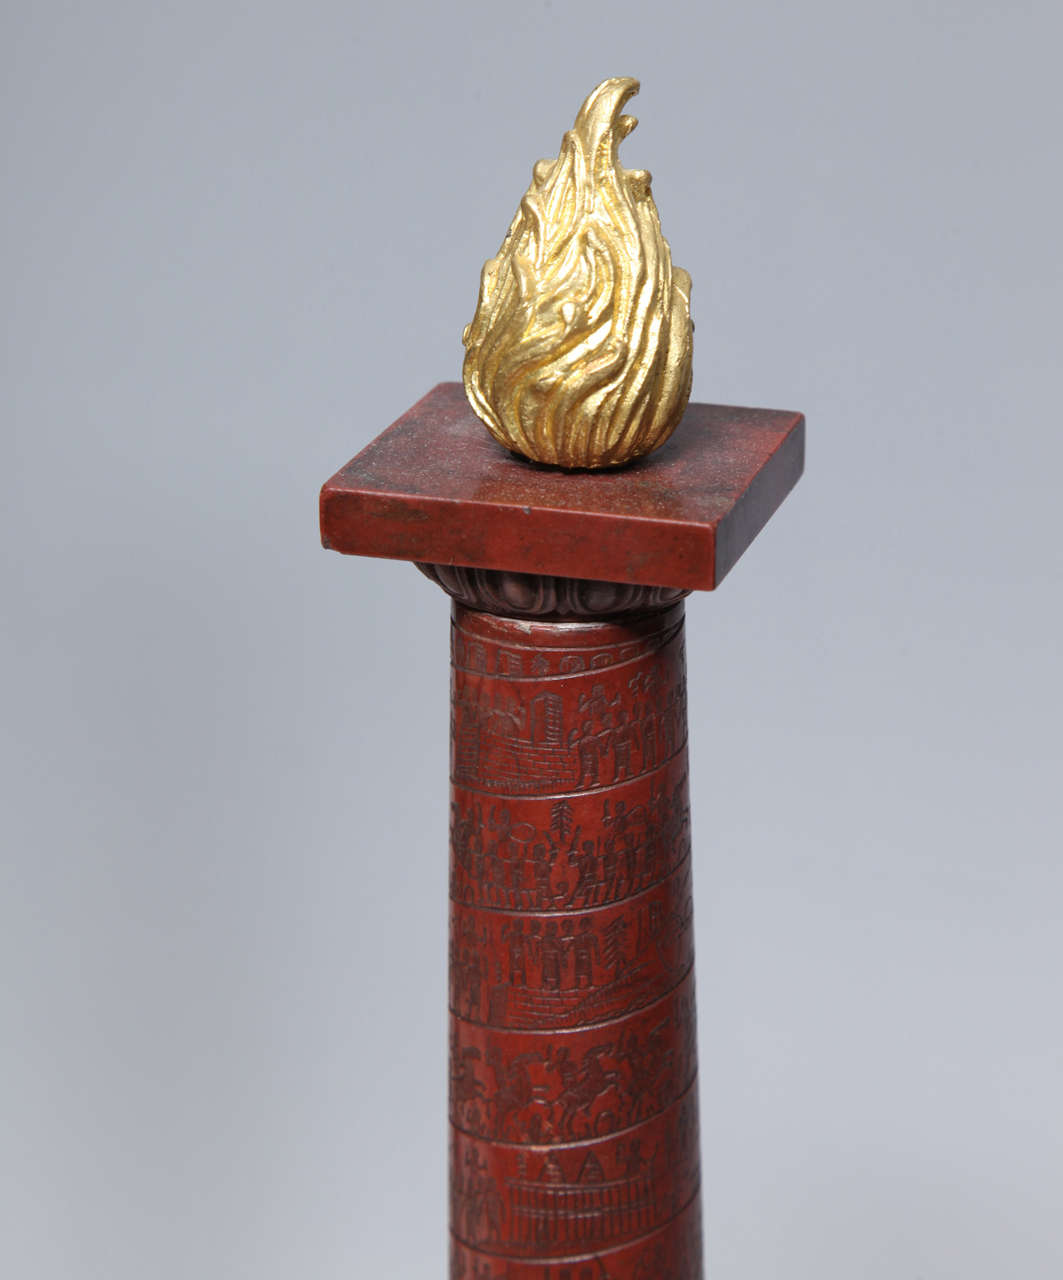 Ein sehr fein geschnitztes Marmorsouvenir aus der Zeit der Grand Tour des 19. Jahrhunderts, darunter ein ägyptischer Obelisk mit Flammenabschluss. Es ist mit vergoldeten lateinischen Buchstaben beschriftet, die den Standort, das Errichtungsdatum